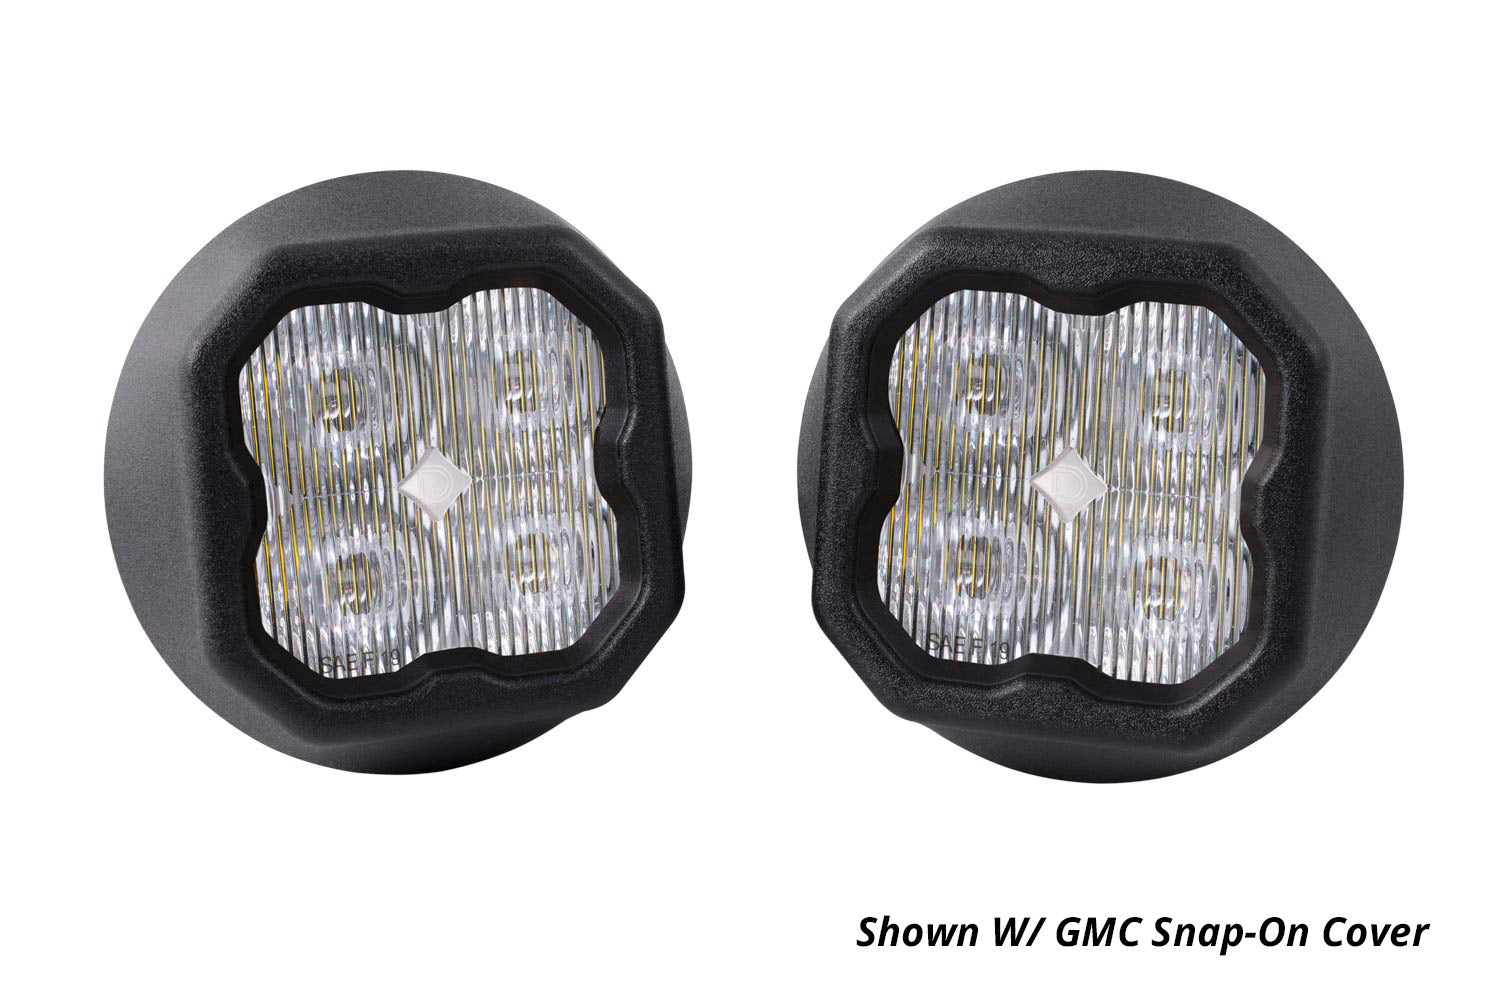 SS3 LED Fog Light Kit for 2007-2014 GMC Yukon White SAE/DOT Driving Sport Diode Dynamics